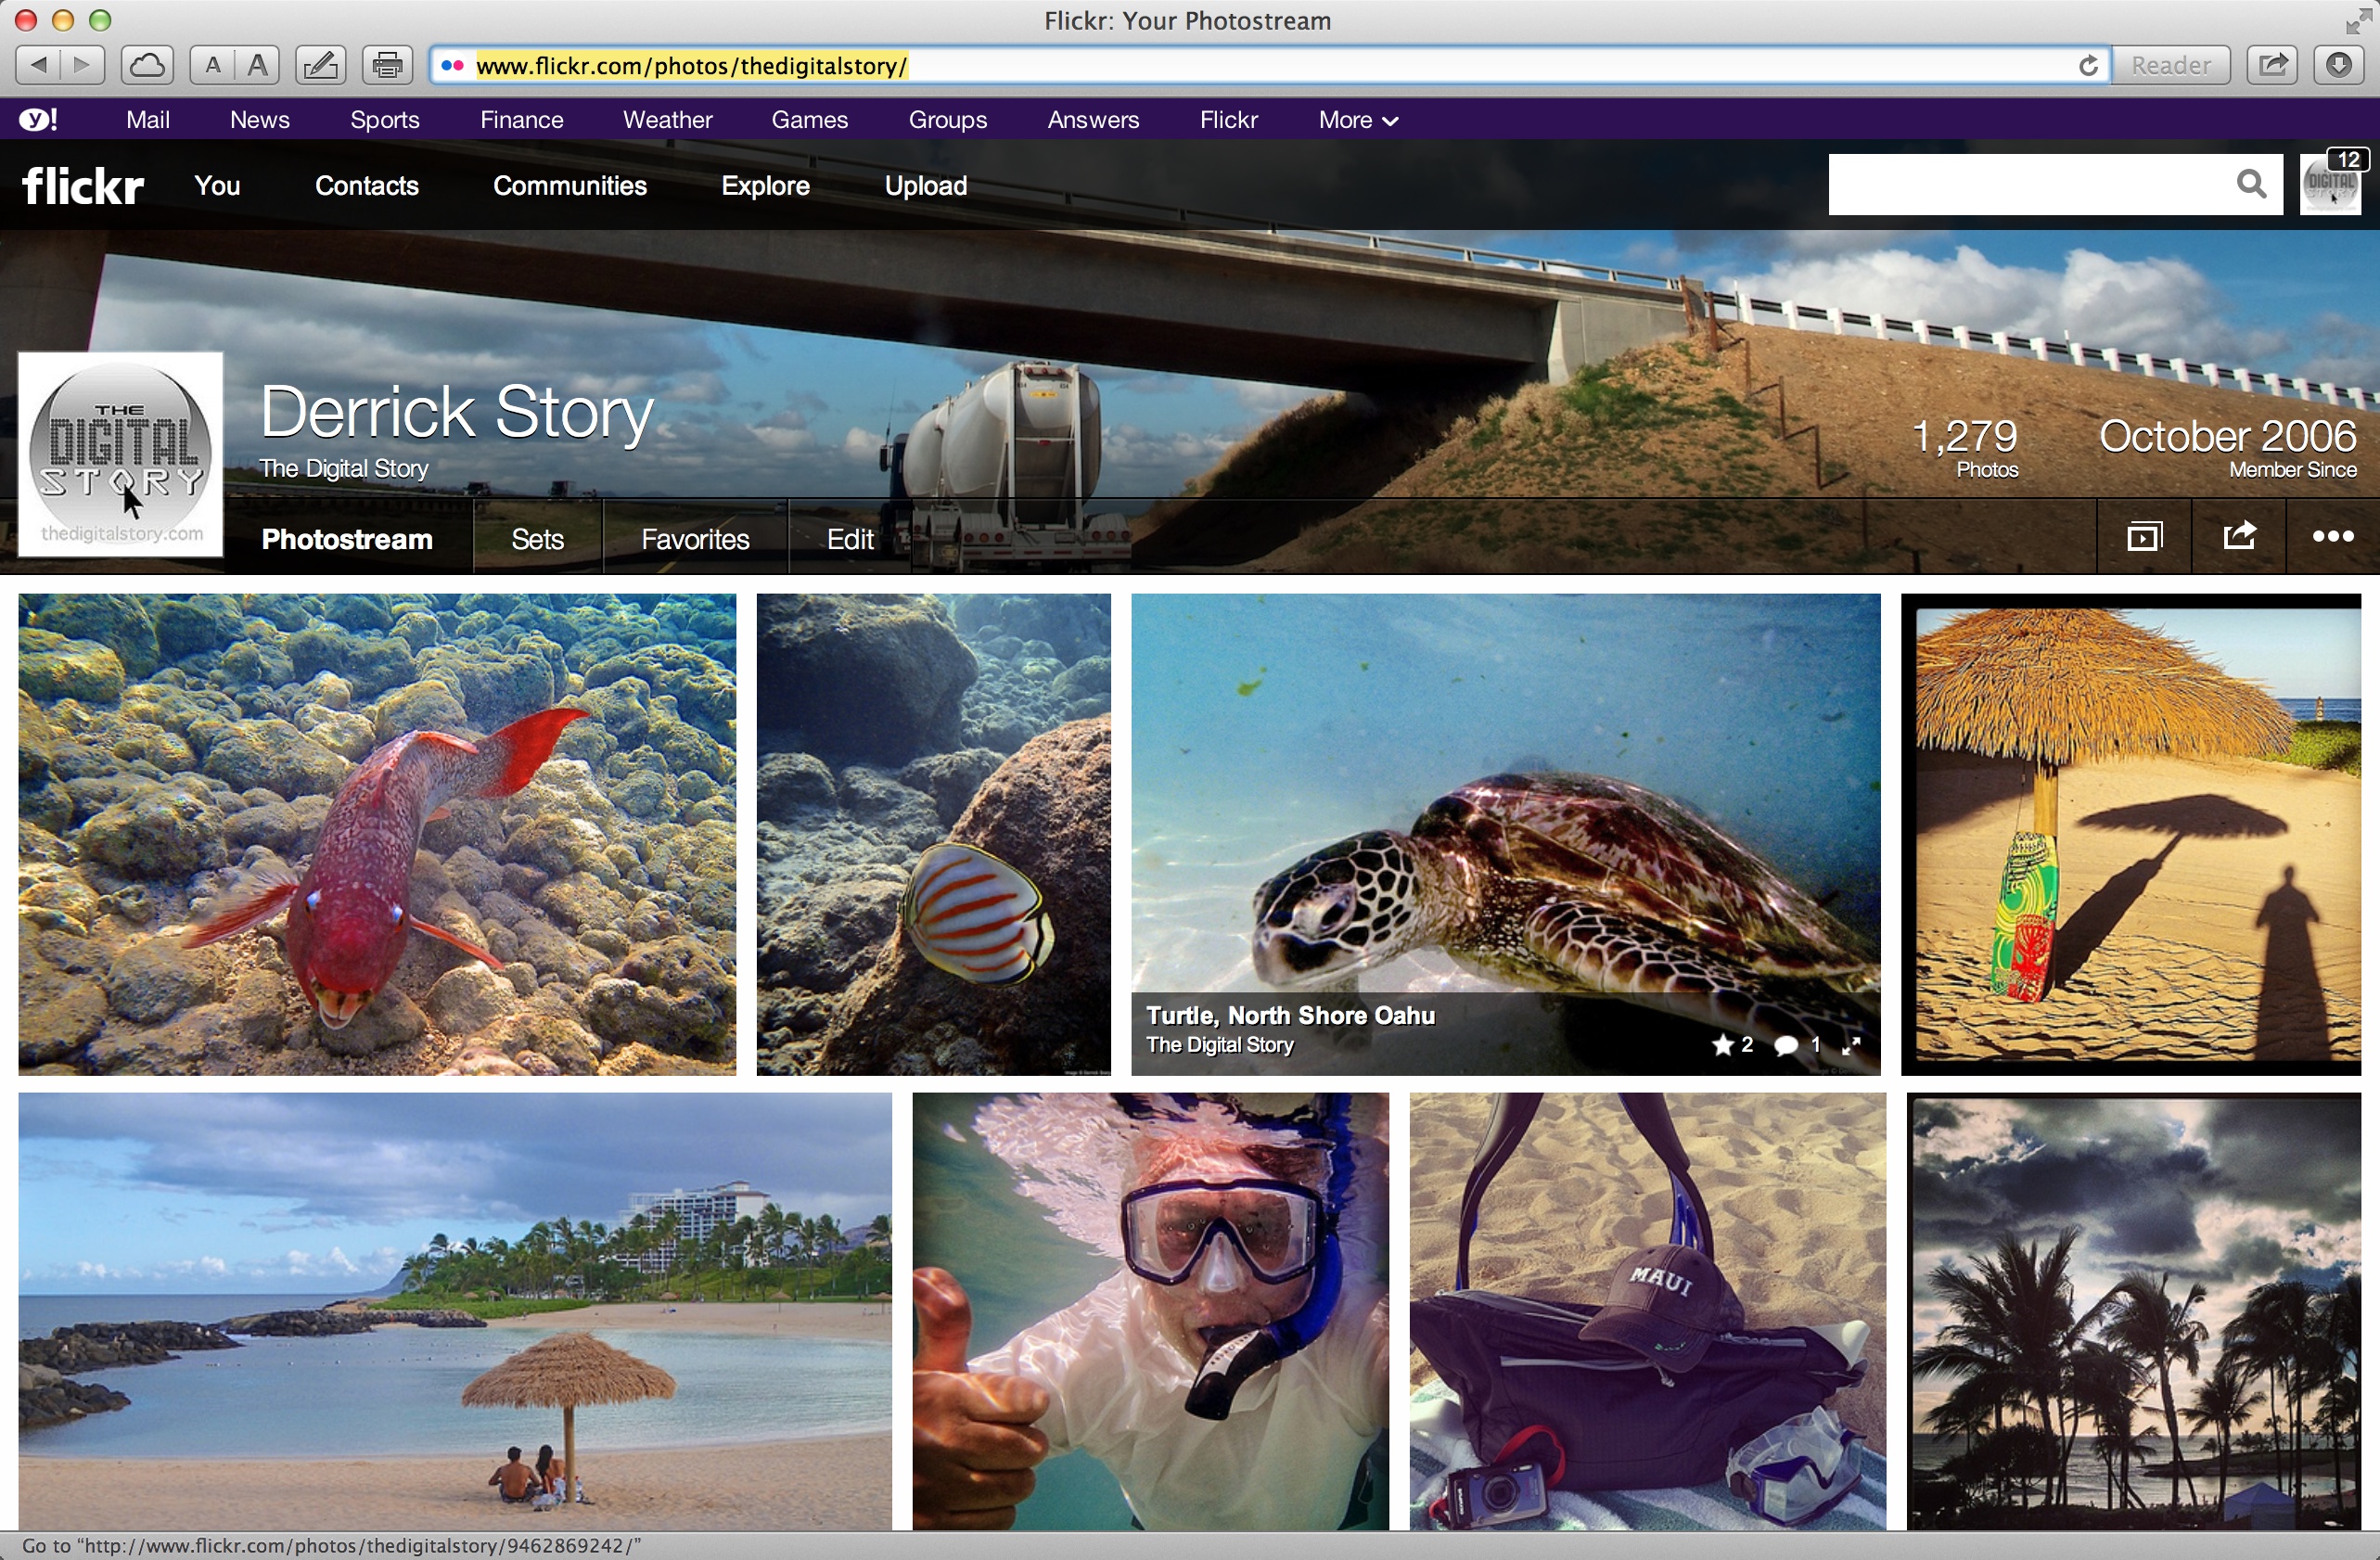 http://thedigitalstory.com/2013/08/11/purple-flickr-nav-bar.jpg